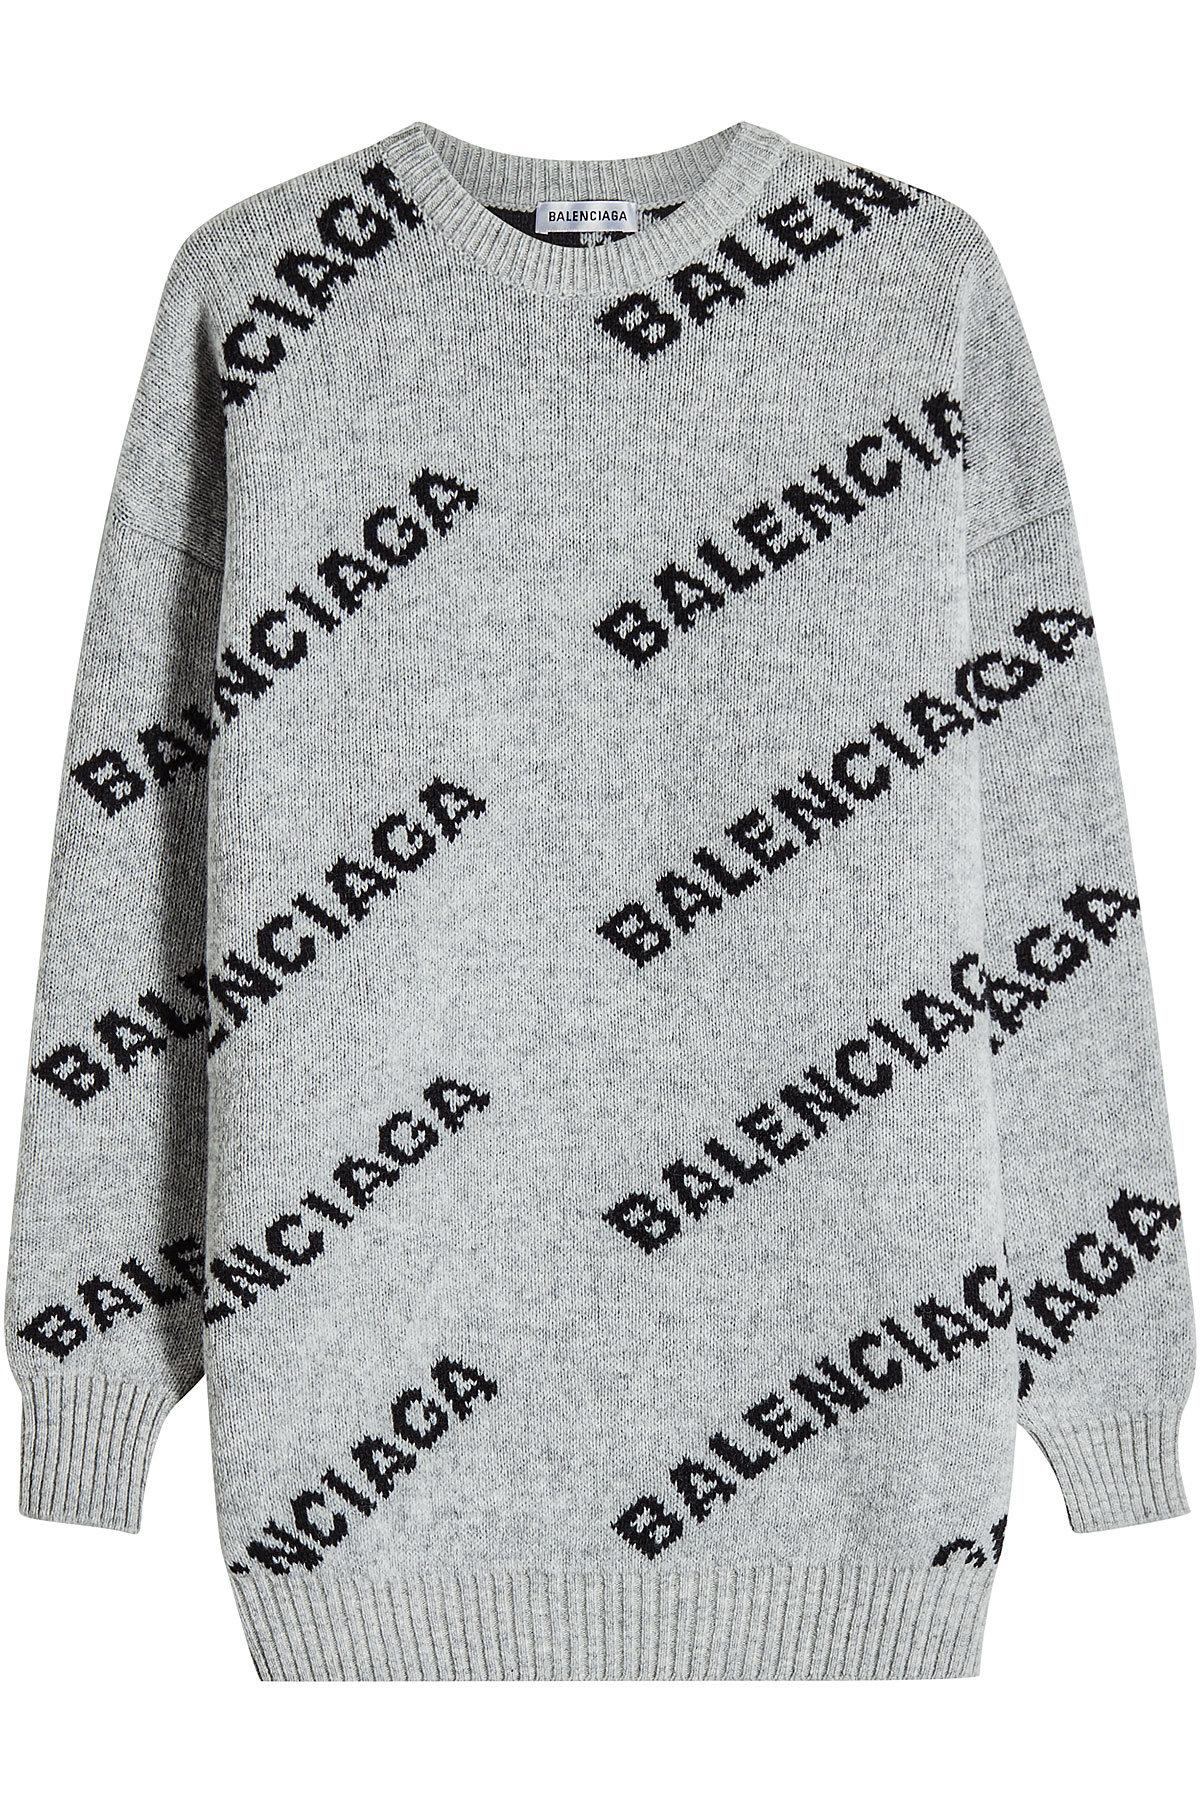 balenciaga sweater dress logo